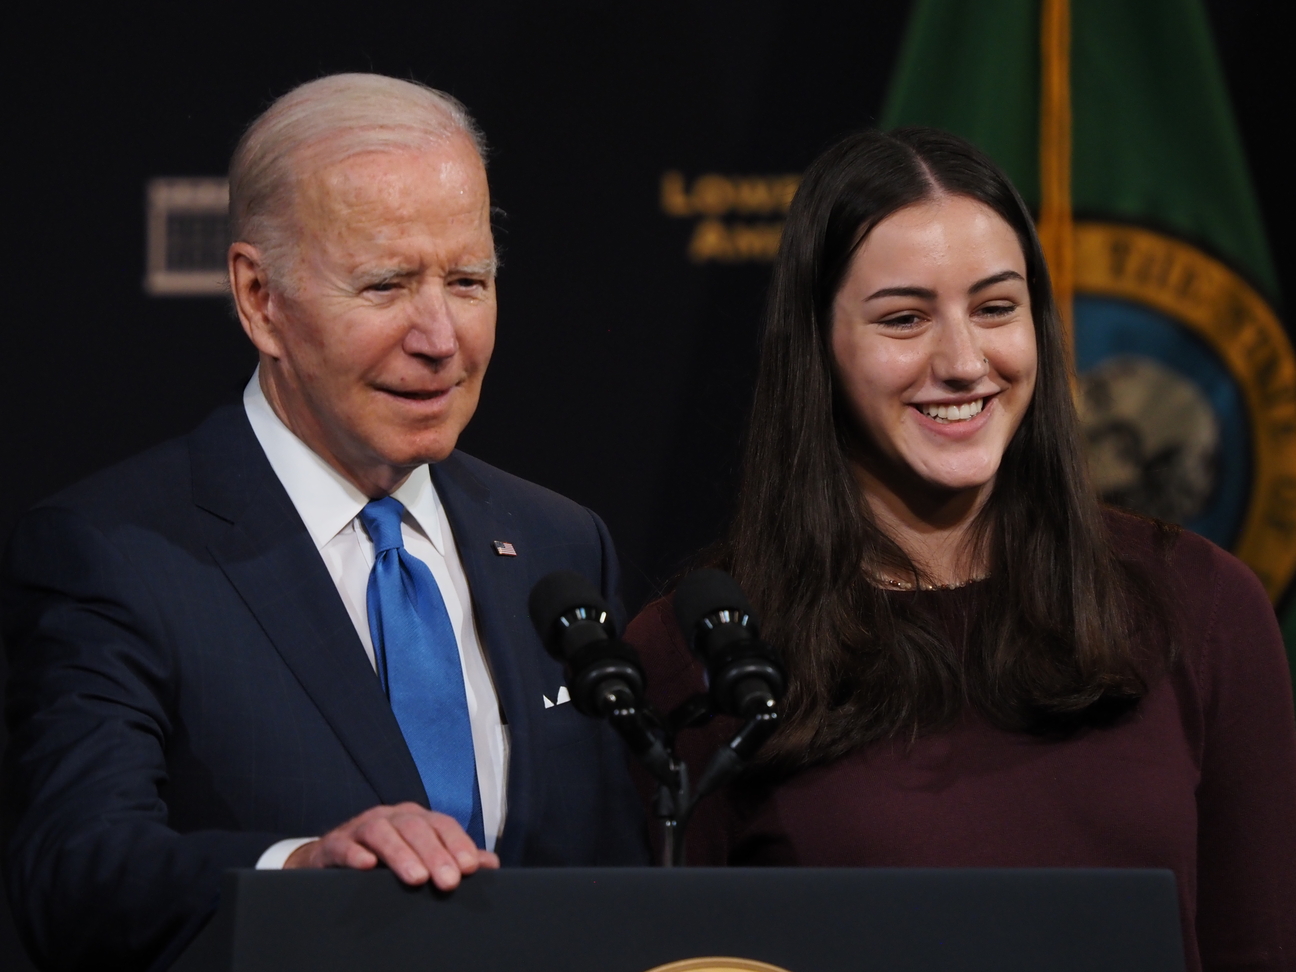 President Joe Biden with Juliana Graceffo